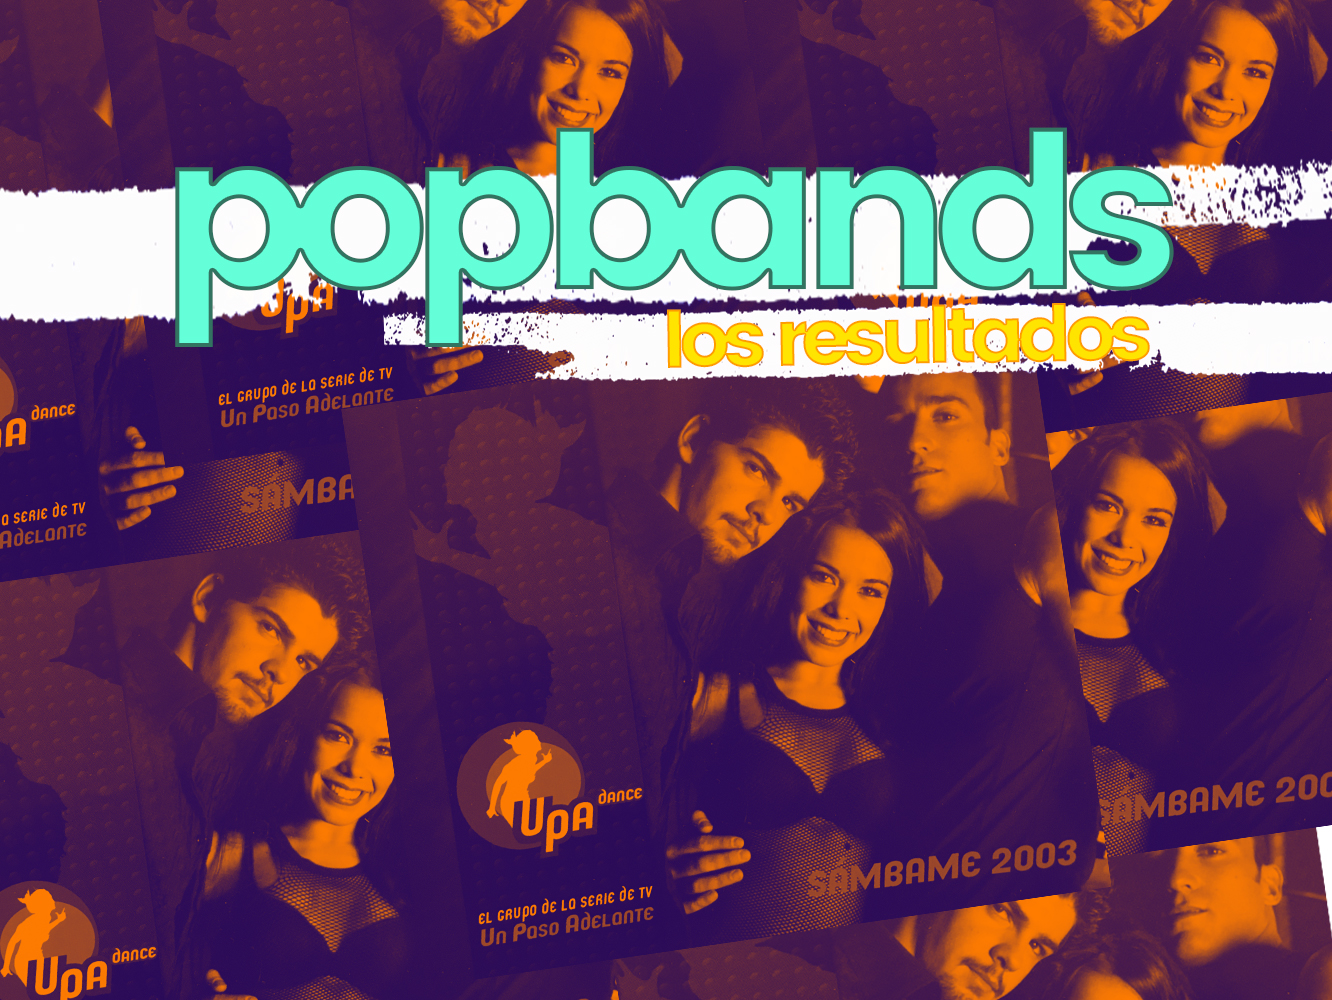 POPBANDS: RESULTADOS | ‘Sámbame’, el mejor single de UPA Dance